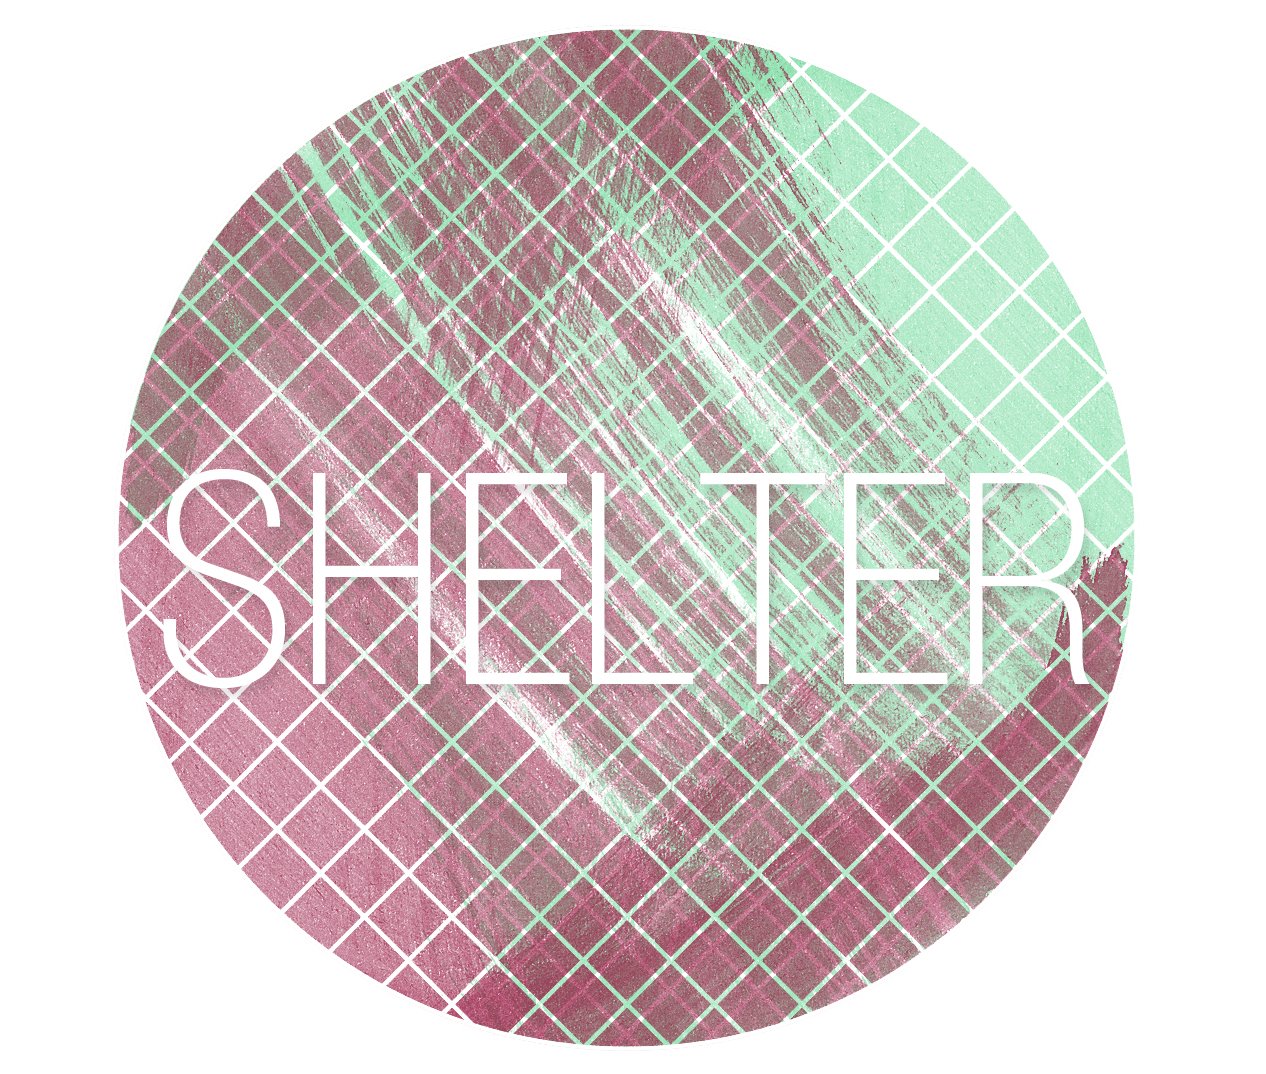 [shelter_logo_2_4.jpg]